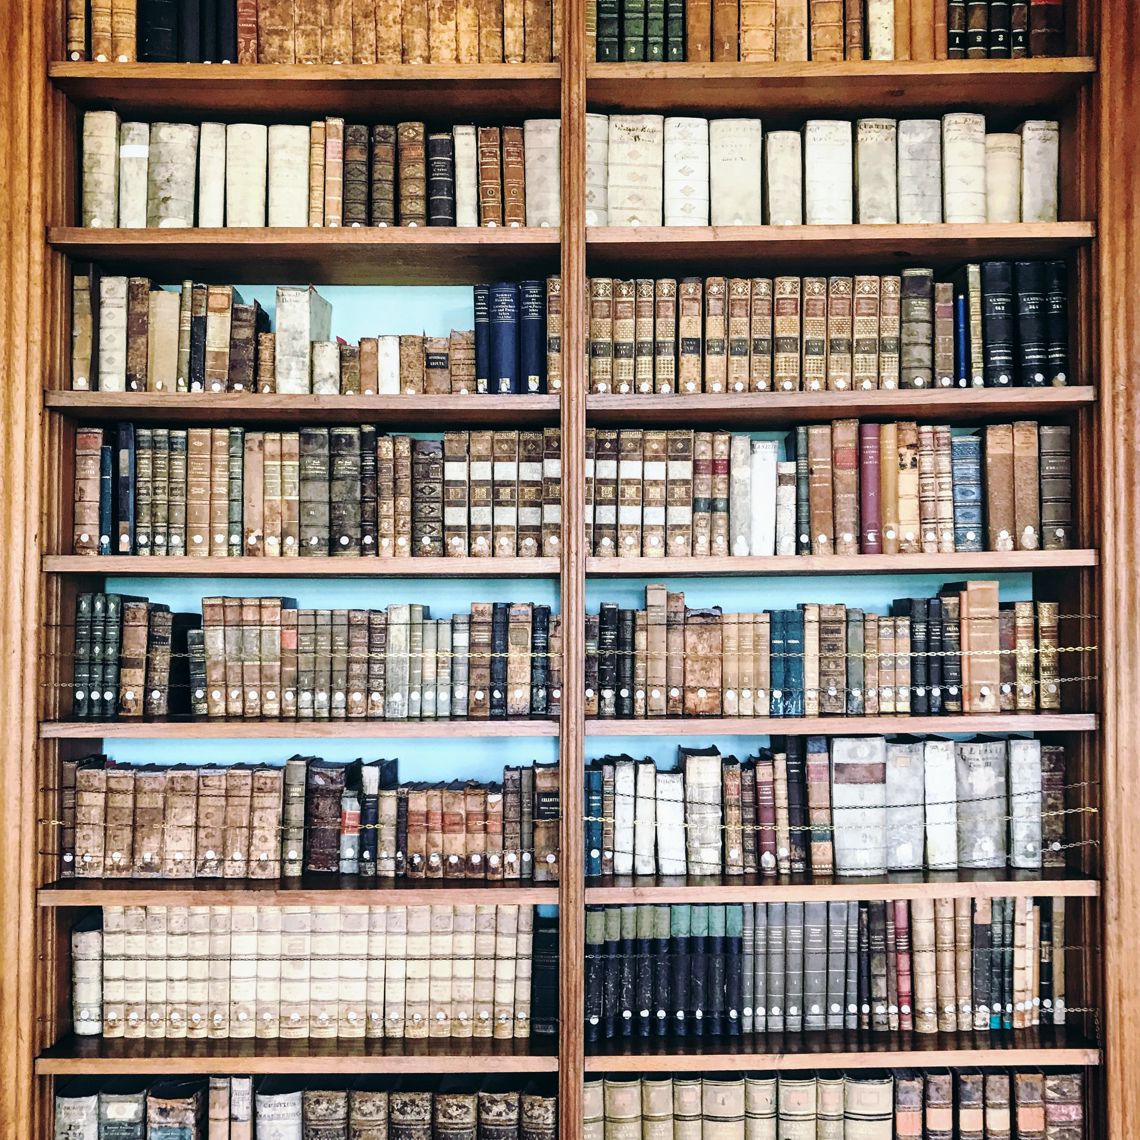 Boekenkast met oude boeken uit de Rococco bibliotheek van Abdij Rolduc